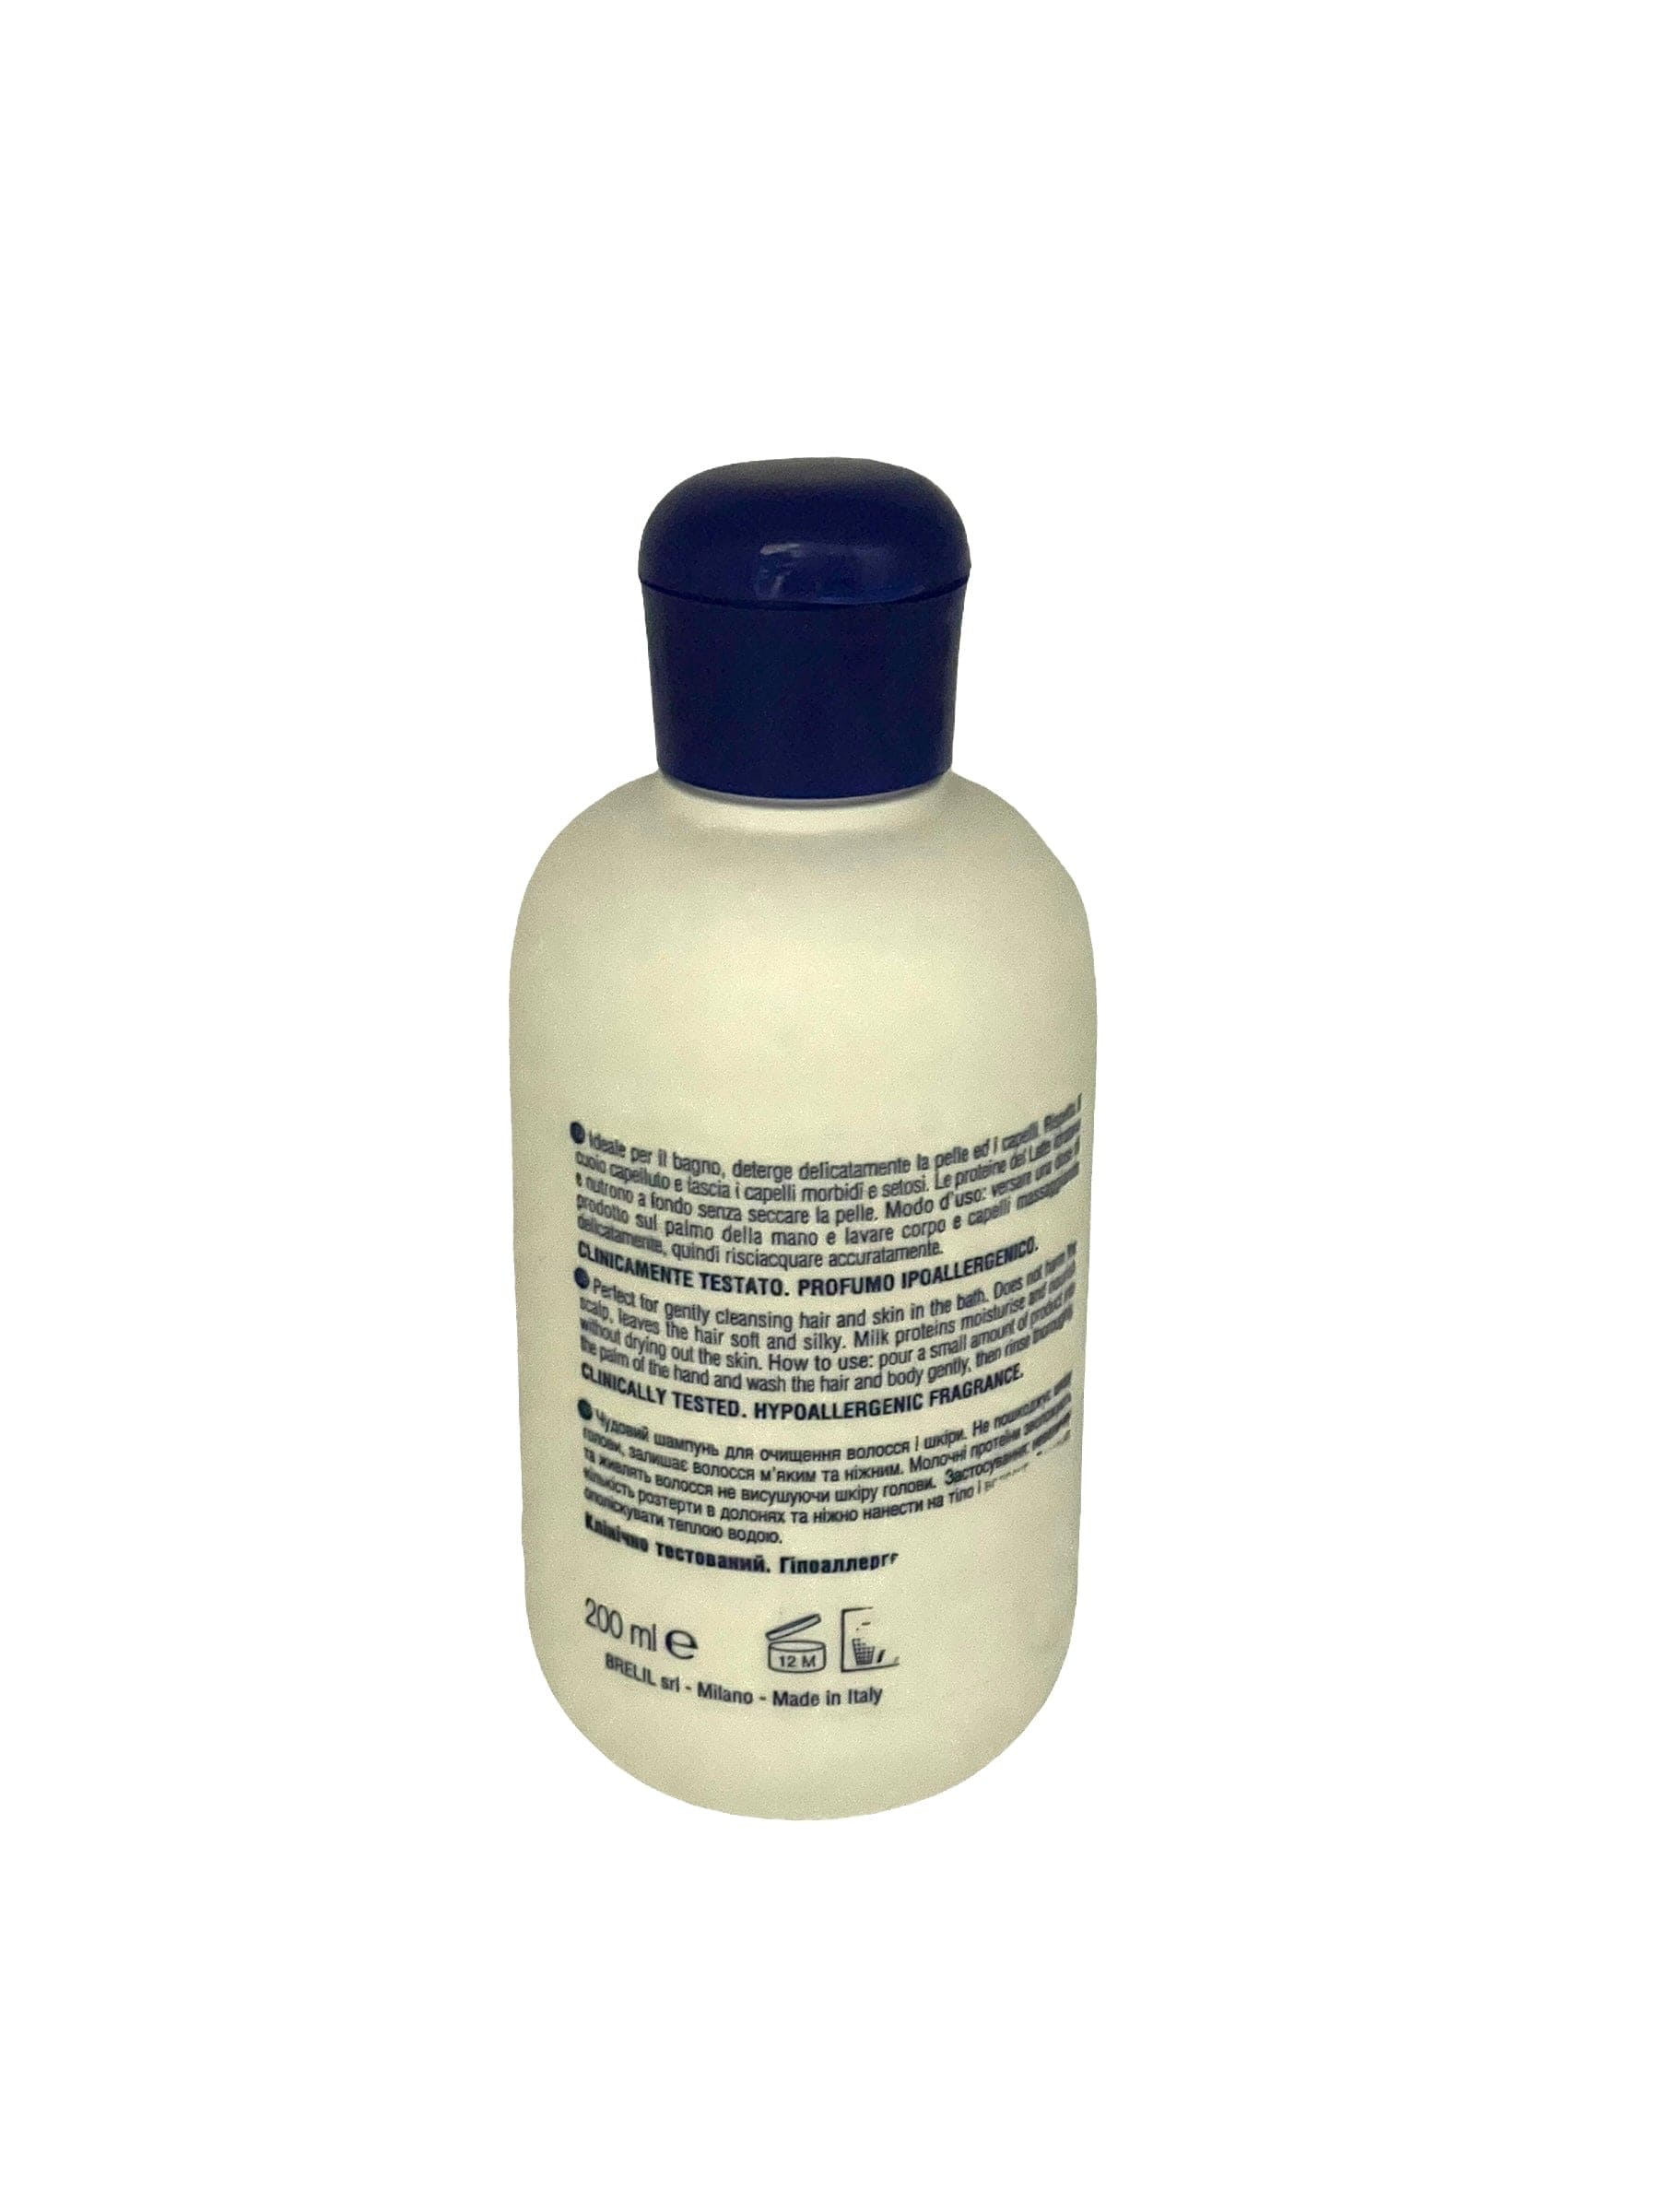 Hair Shampoo 014 Hair & Body Wash For Sensitive Skin 6.76oz/200ml Hair Shampoo